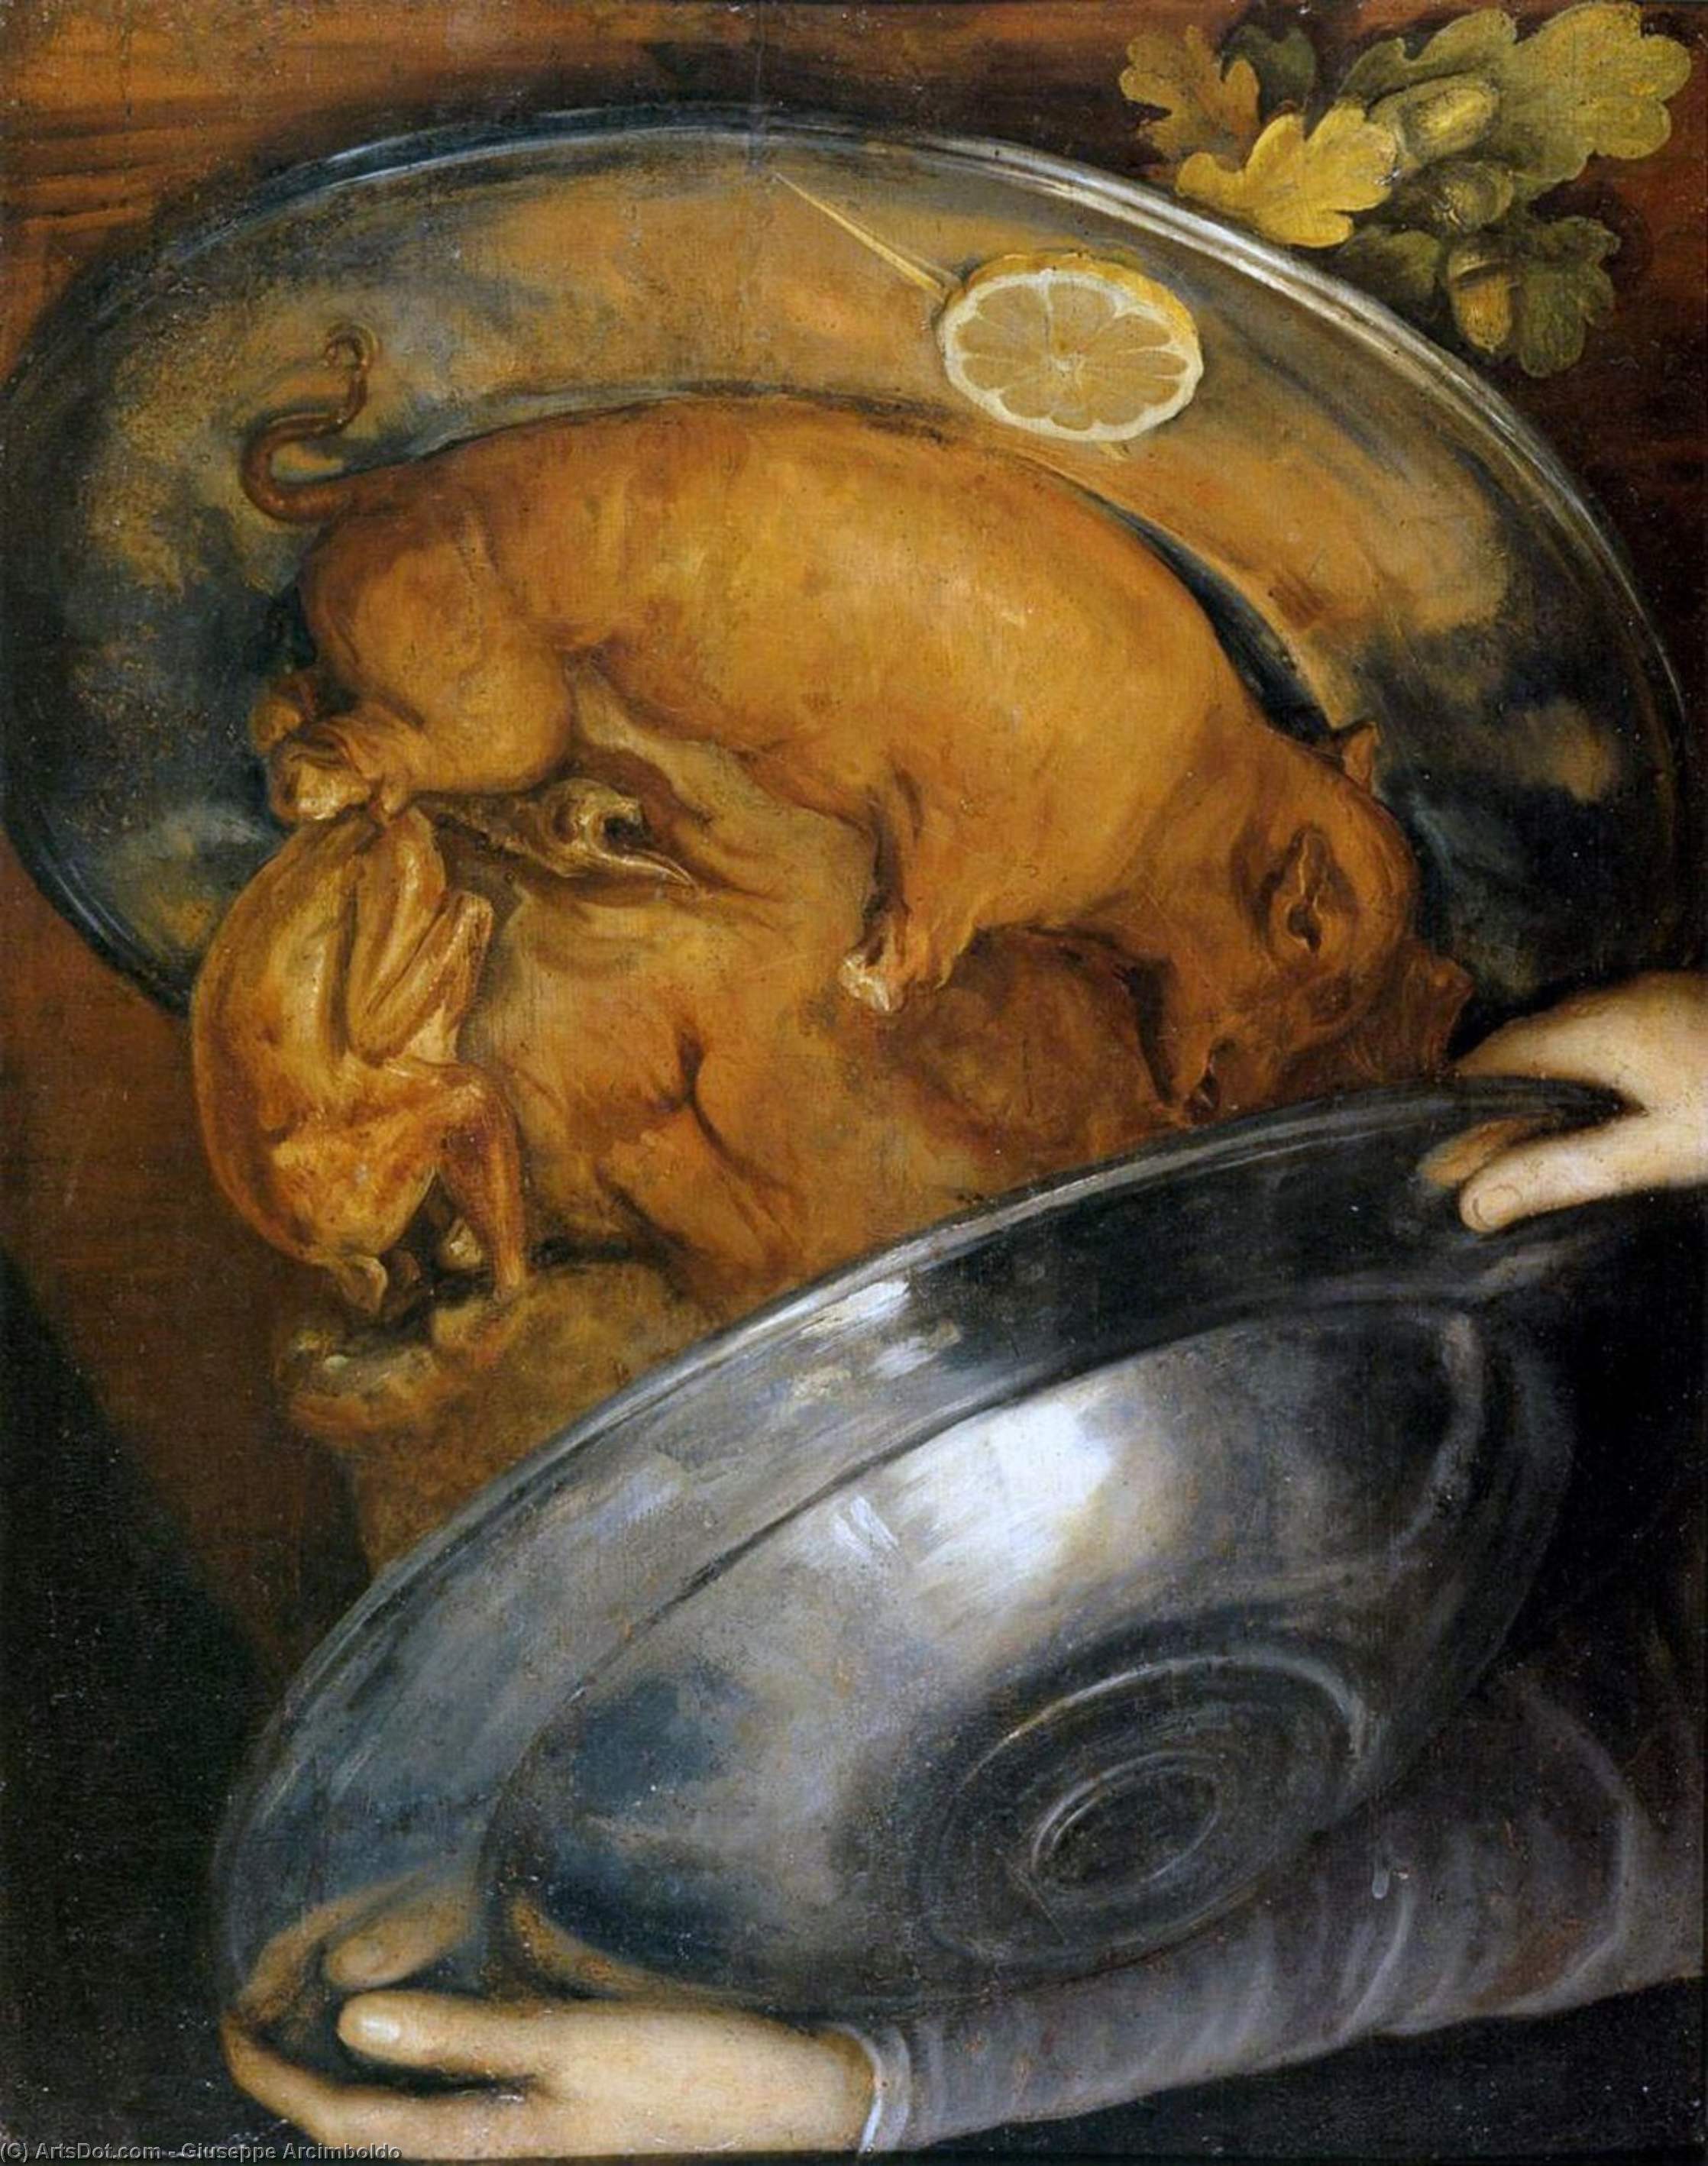 WikiOO.org - Güzel Sanatlar Ansiklopedisi - Resim, Resimler Giuseppe Arcimboldo - The Cook